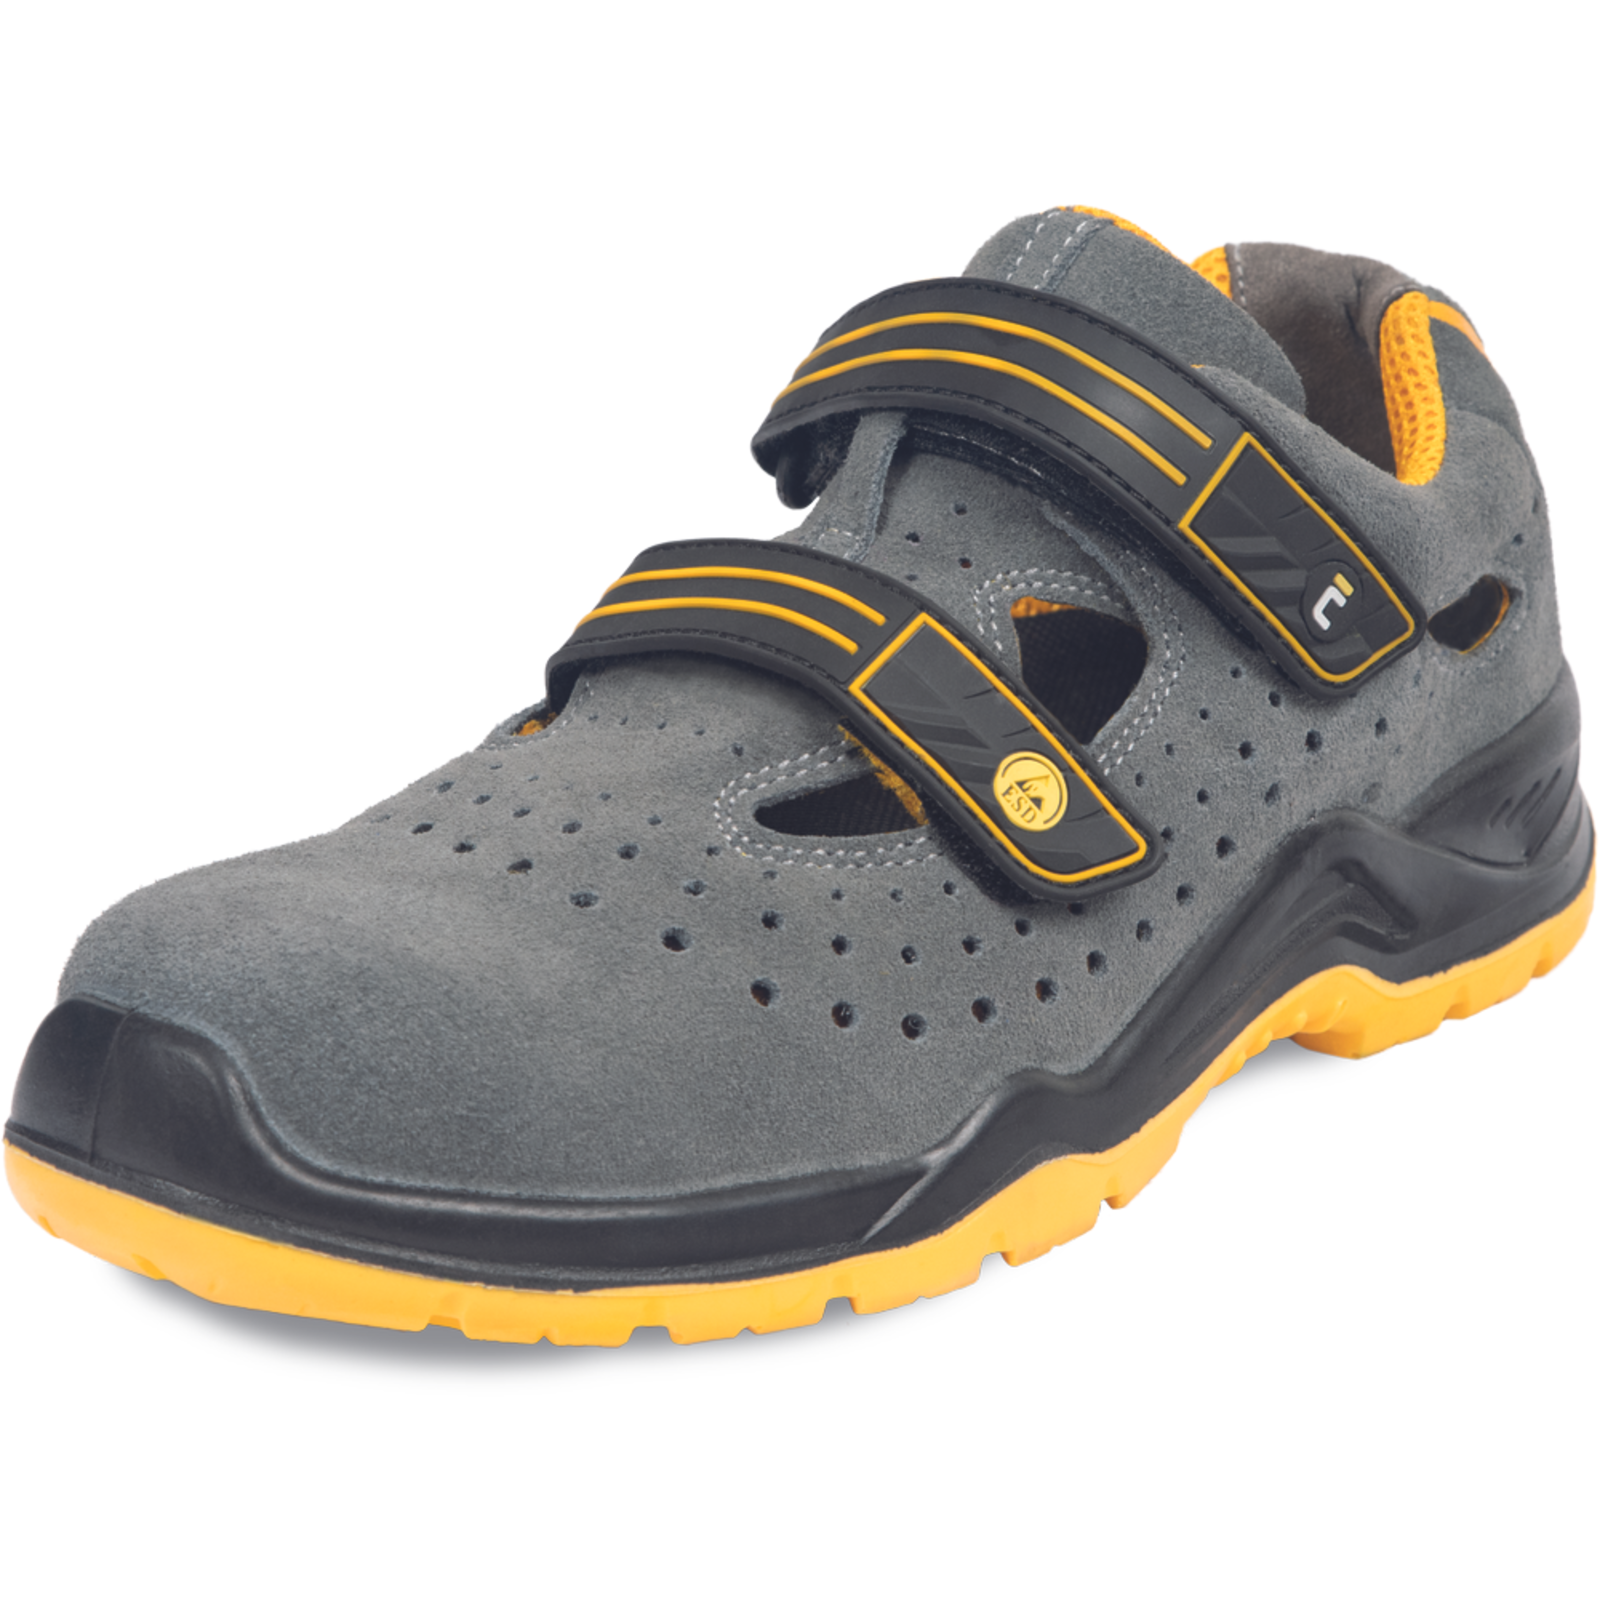 Pracovné bezpečnostné sandále Cerva Yuwill MF ESD S1P SRC - veľkosť: 47, farba: sivá/žltá